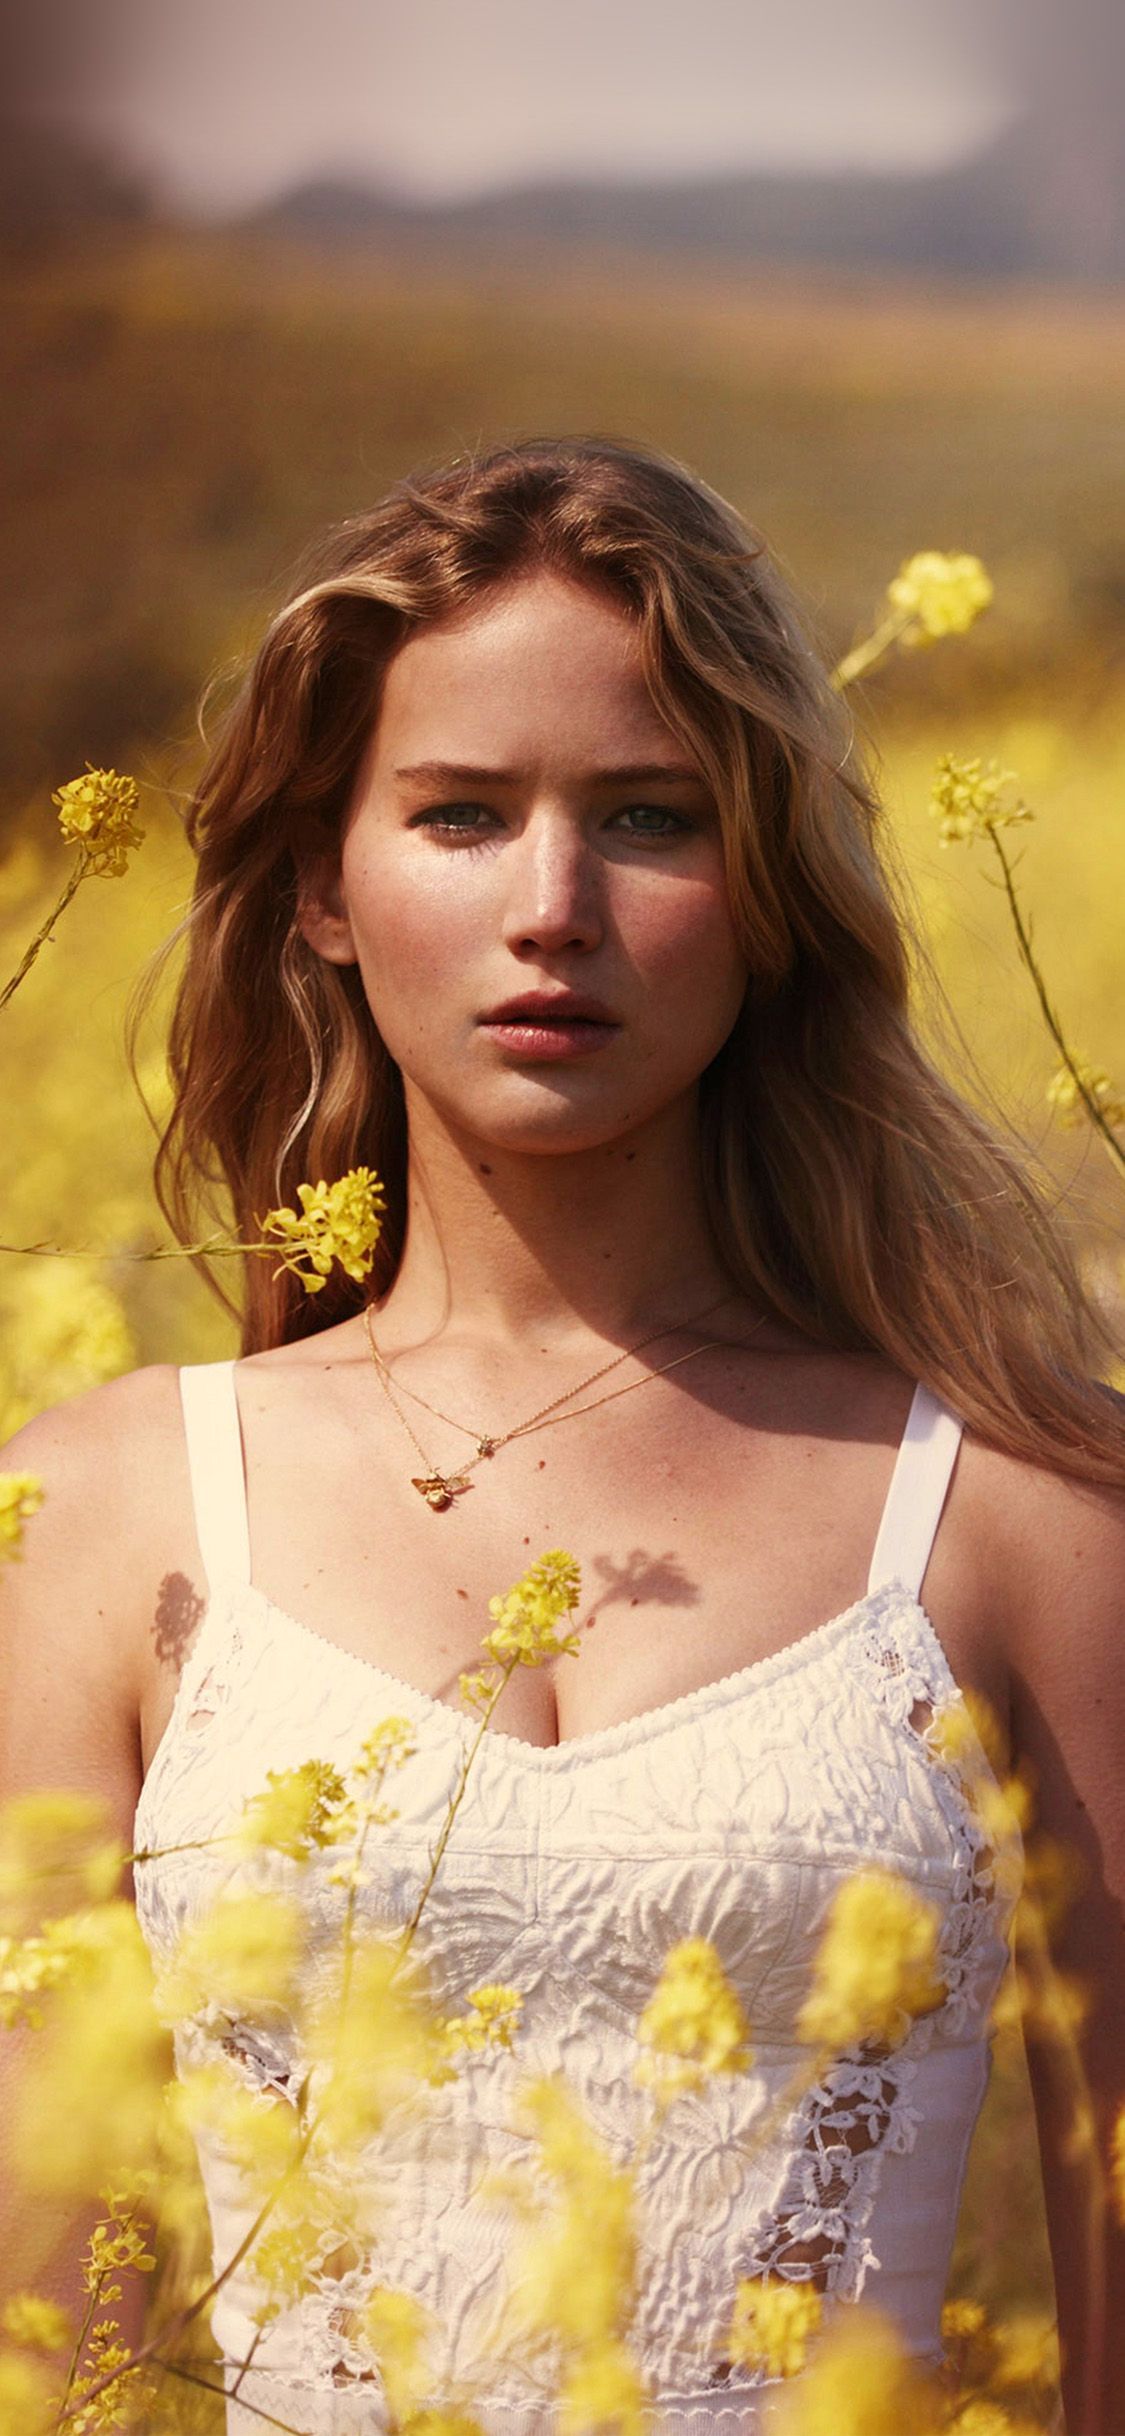 Jennifer Lawrence standing in a field of yellow flowers - Jennifer Lawrence